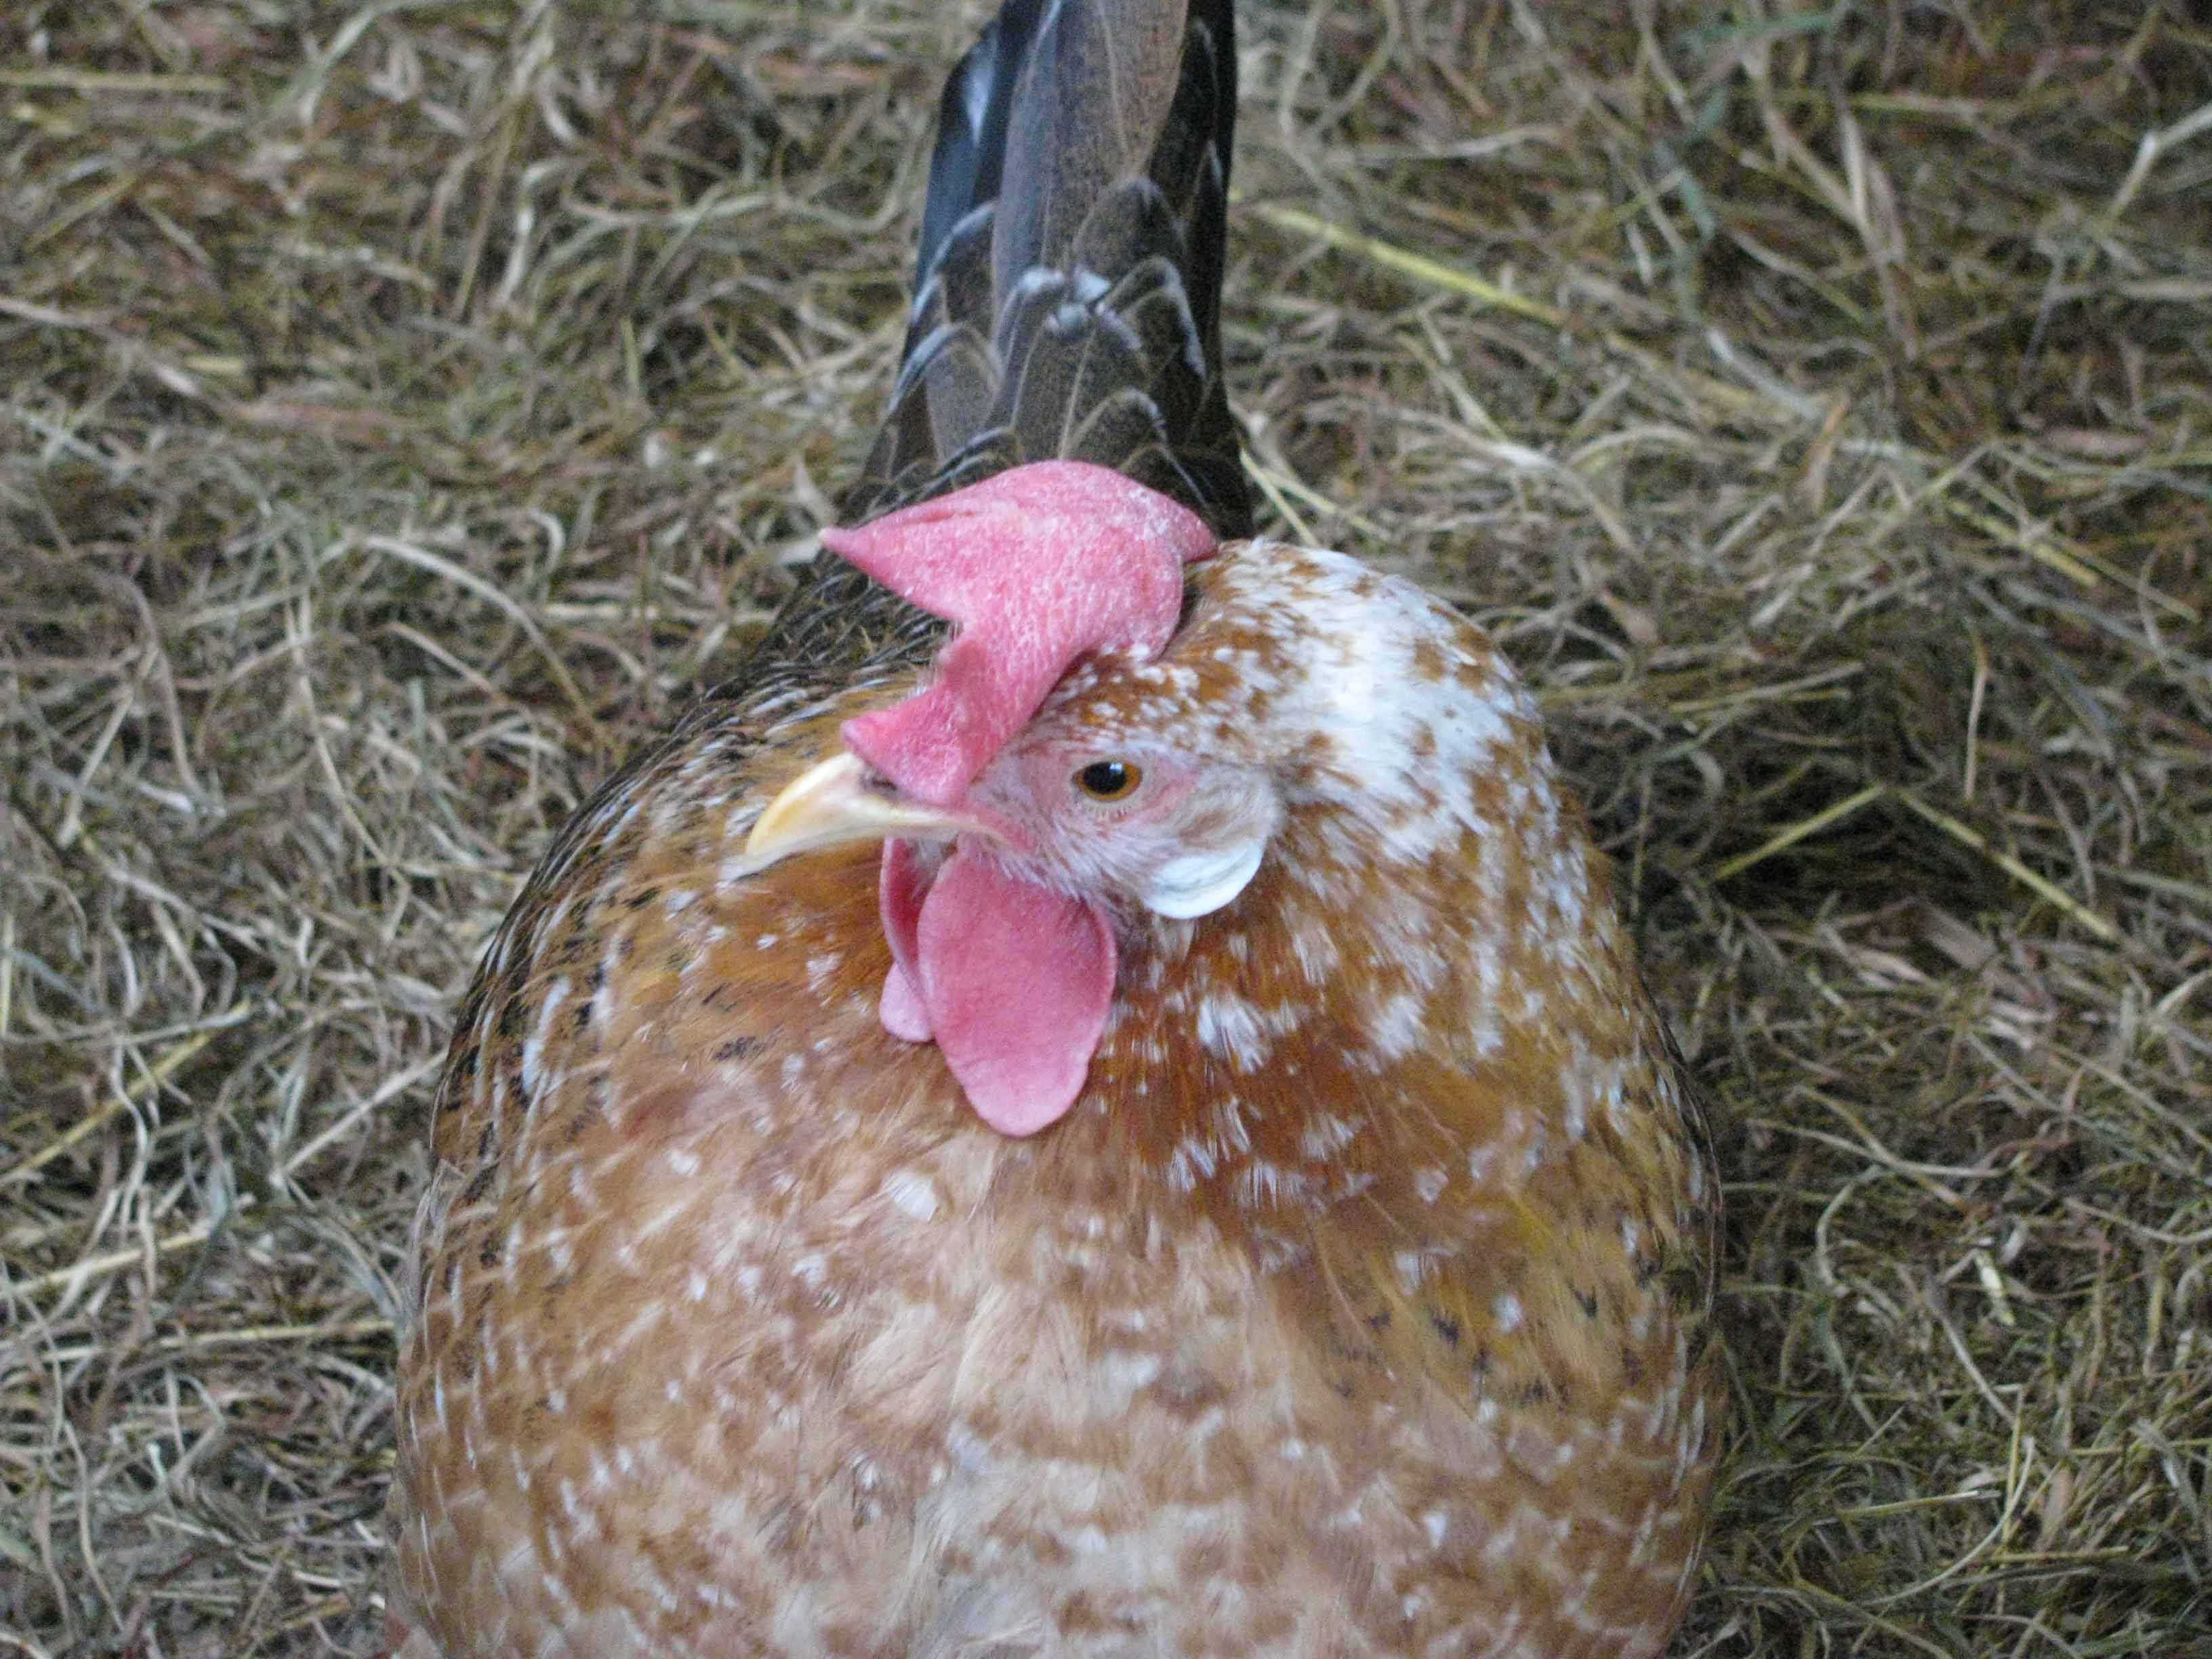 AN odd chicken